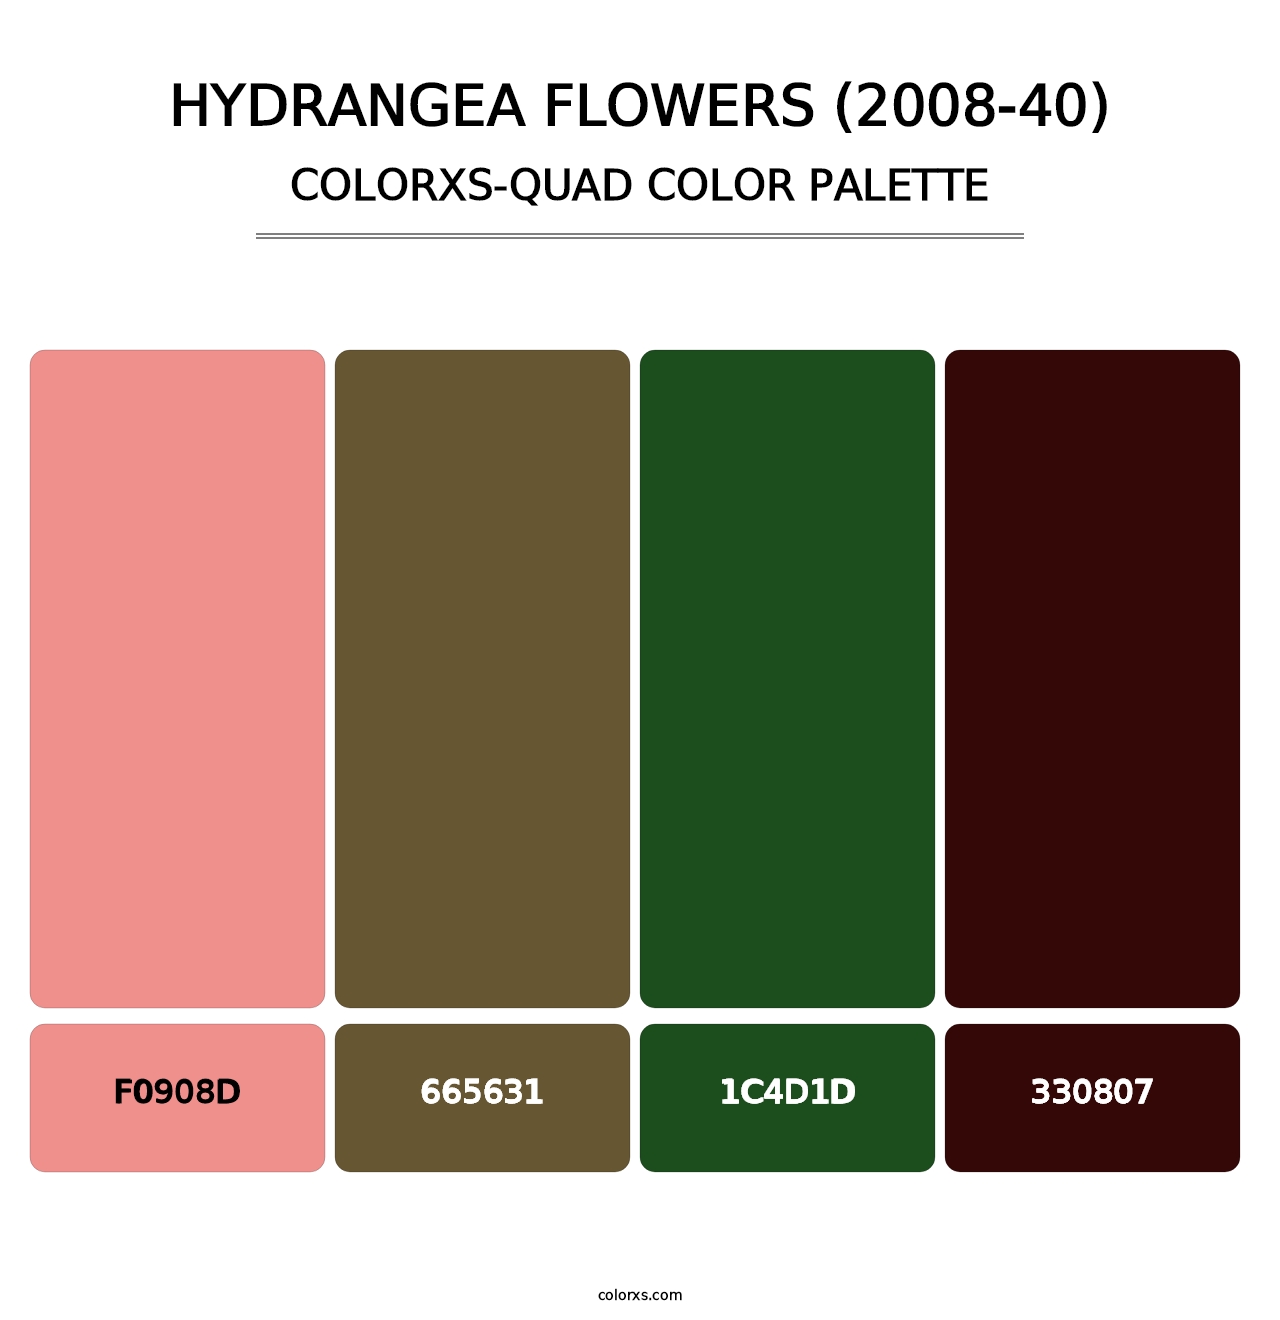 Hydrangea Flowers (2008-40) - Colorxs Quad Palette